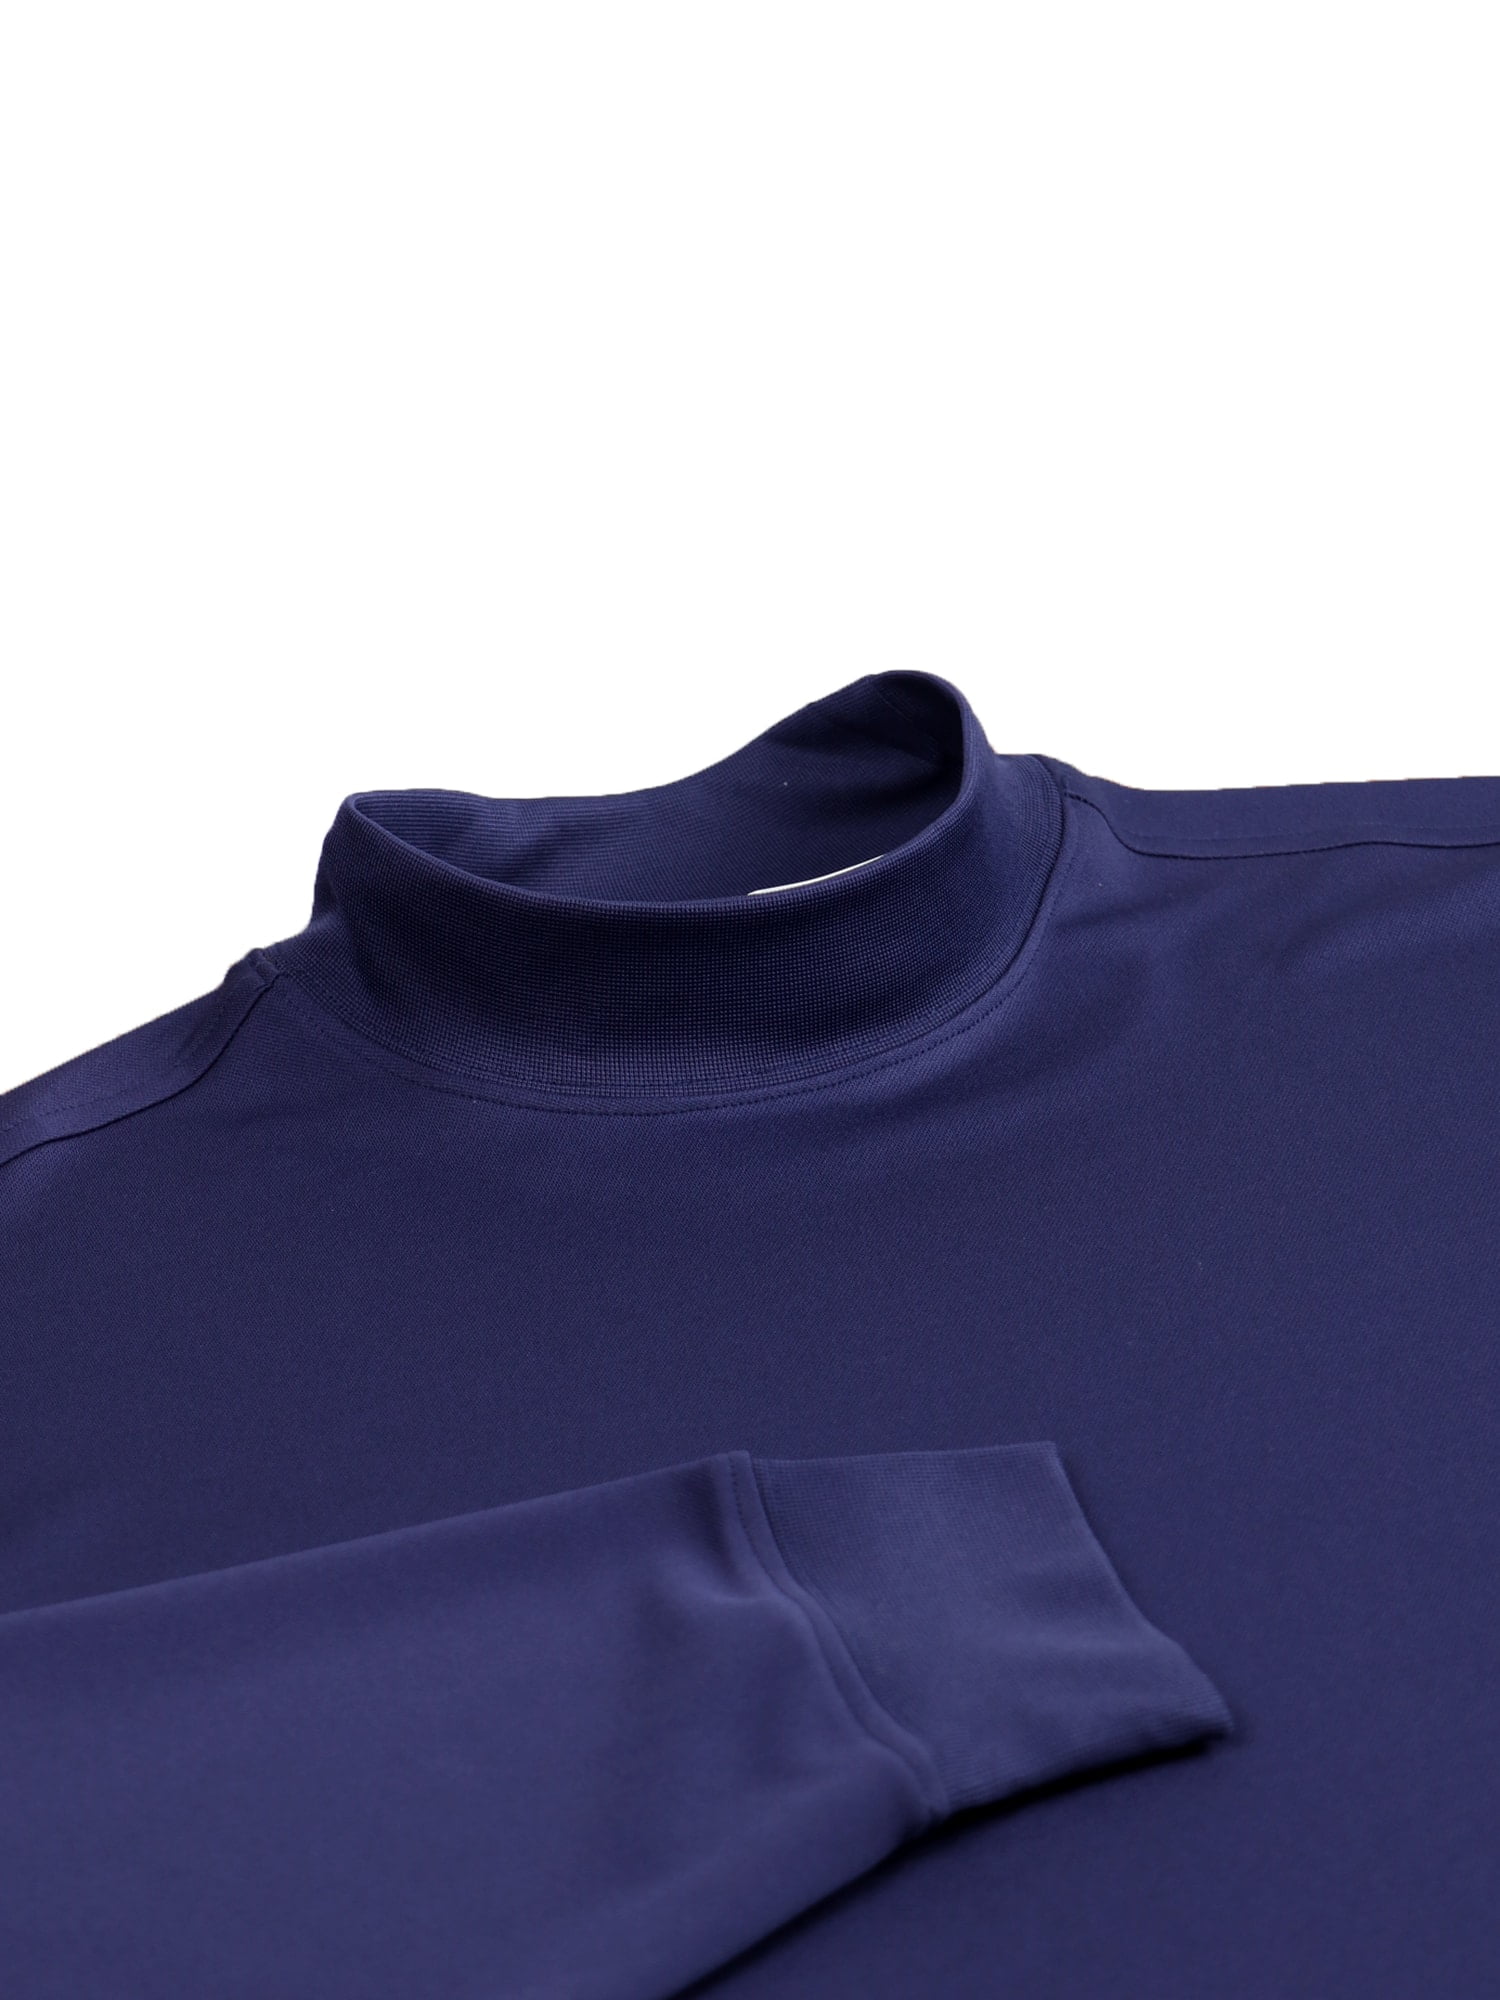 Download Long Sleeve Mock Neck Jersey - Navy - Donald Ross Sportswear